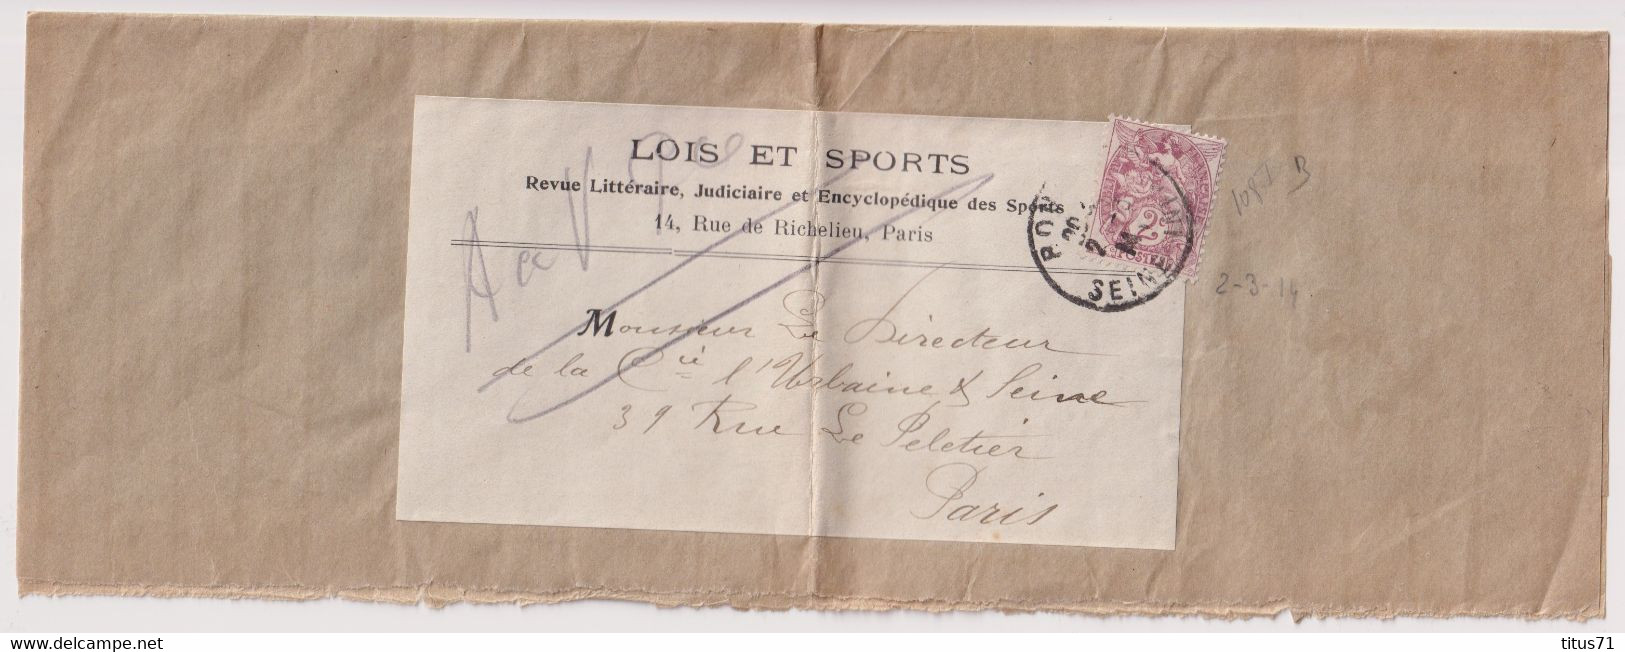 Bande De Journal Timbre 2 Centimes Sage - Journal Lois Et Sports - Circulée 1914 - Zeitungsmarken (Streifbänder)